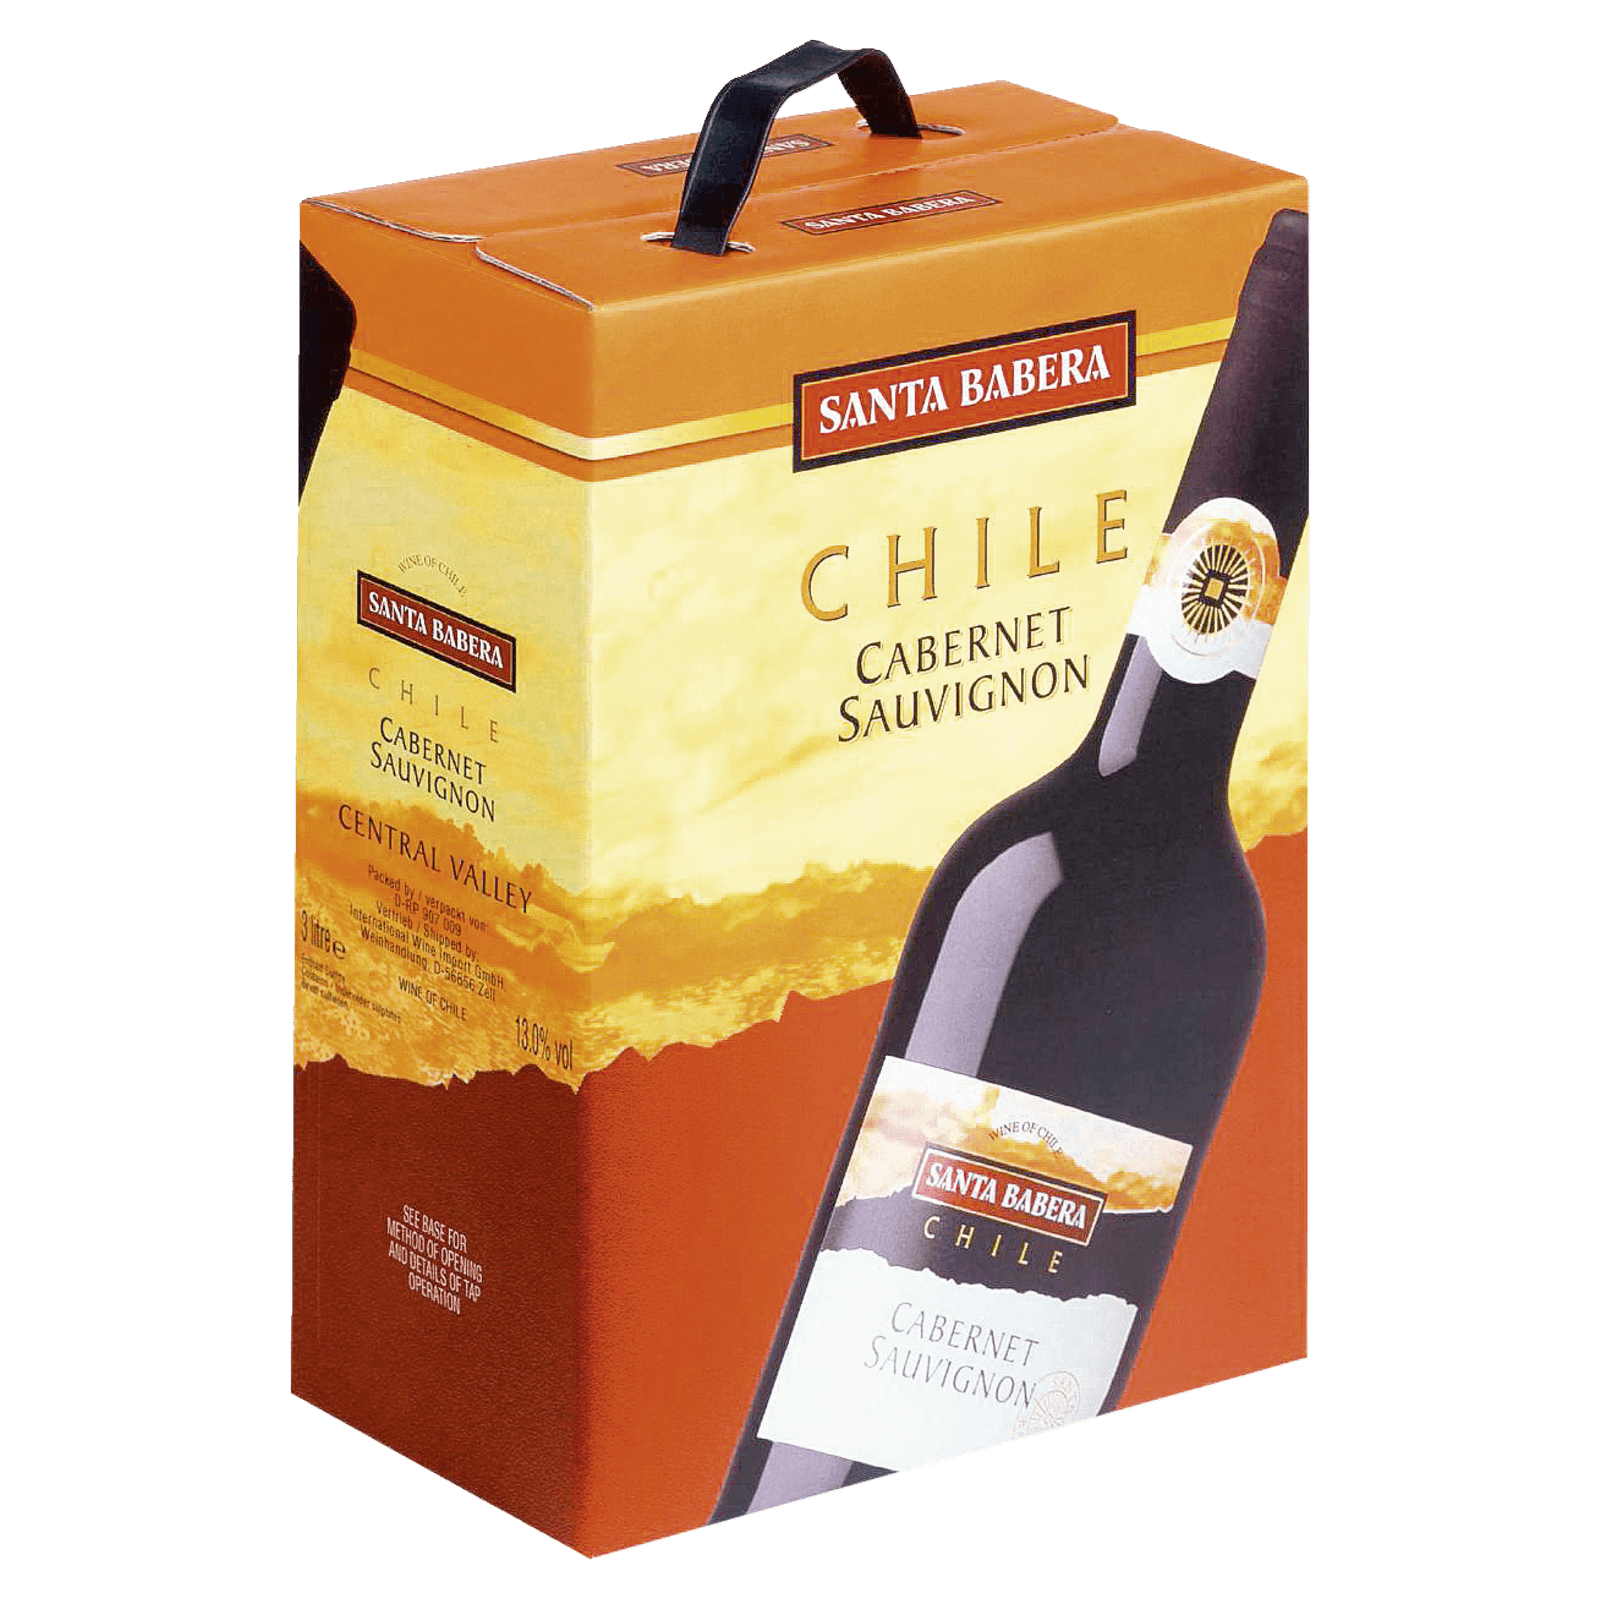 Santa Babera Rotwein Chile Sauvignon trocken bestellen! bei online REWE 3l Cabernet